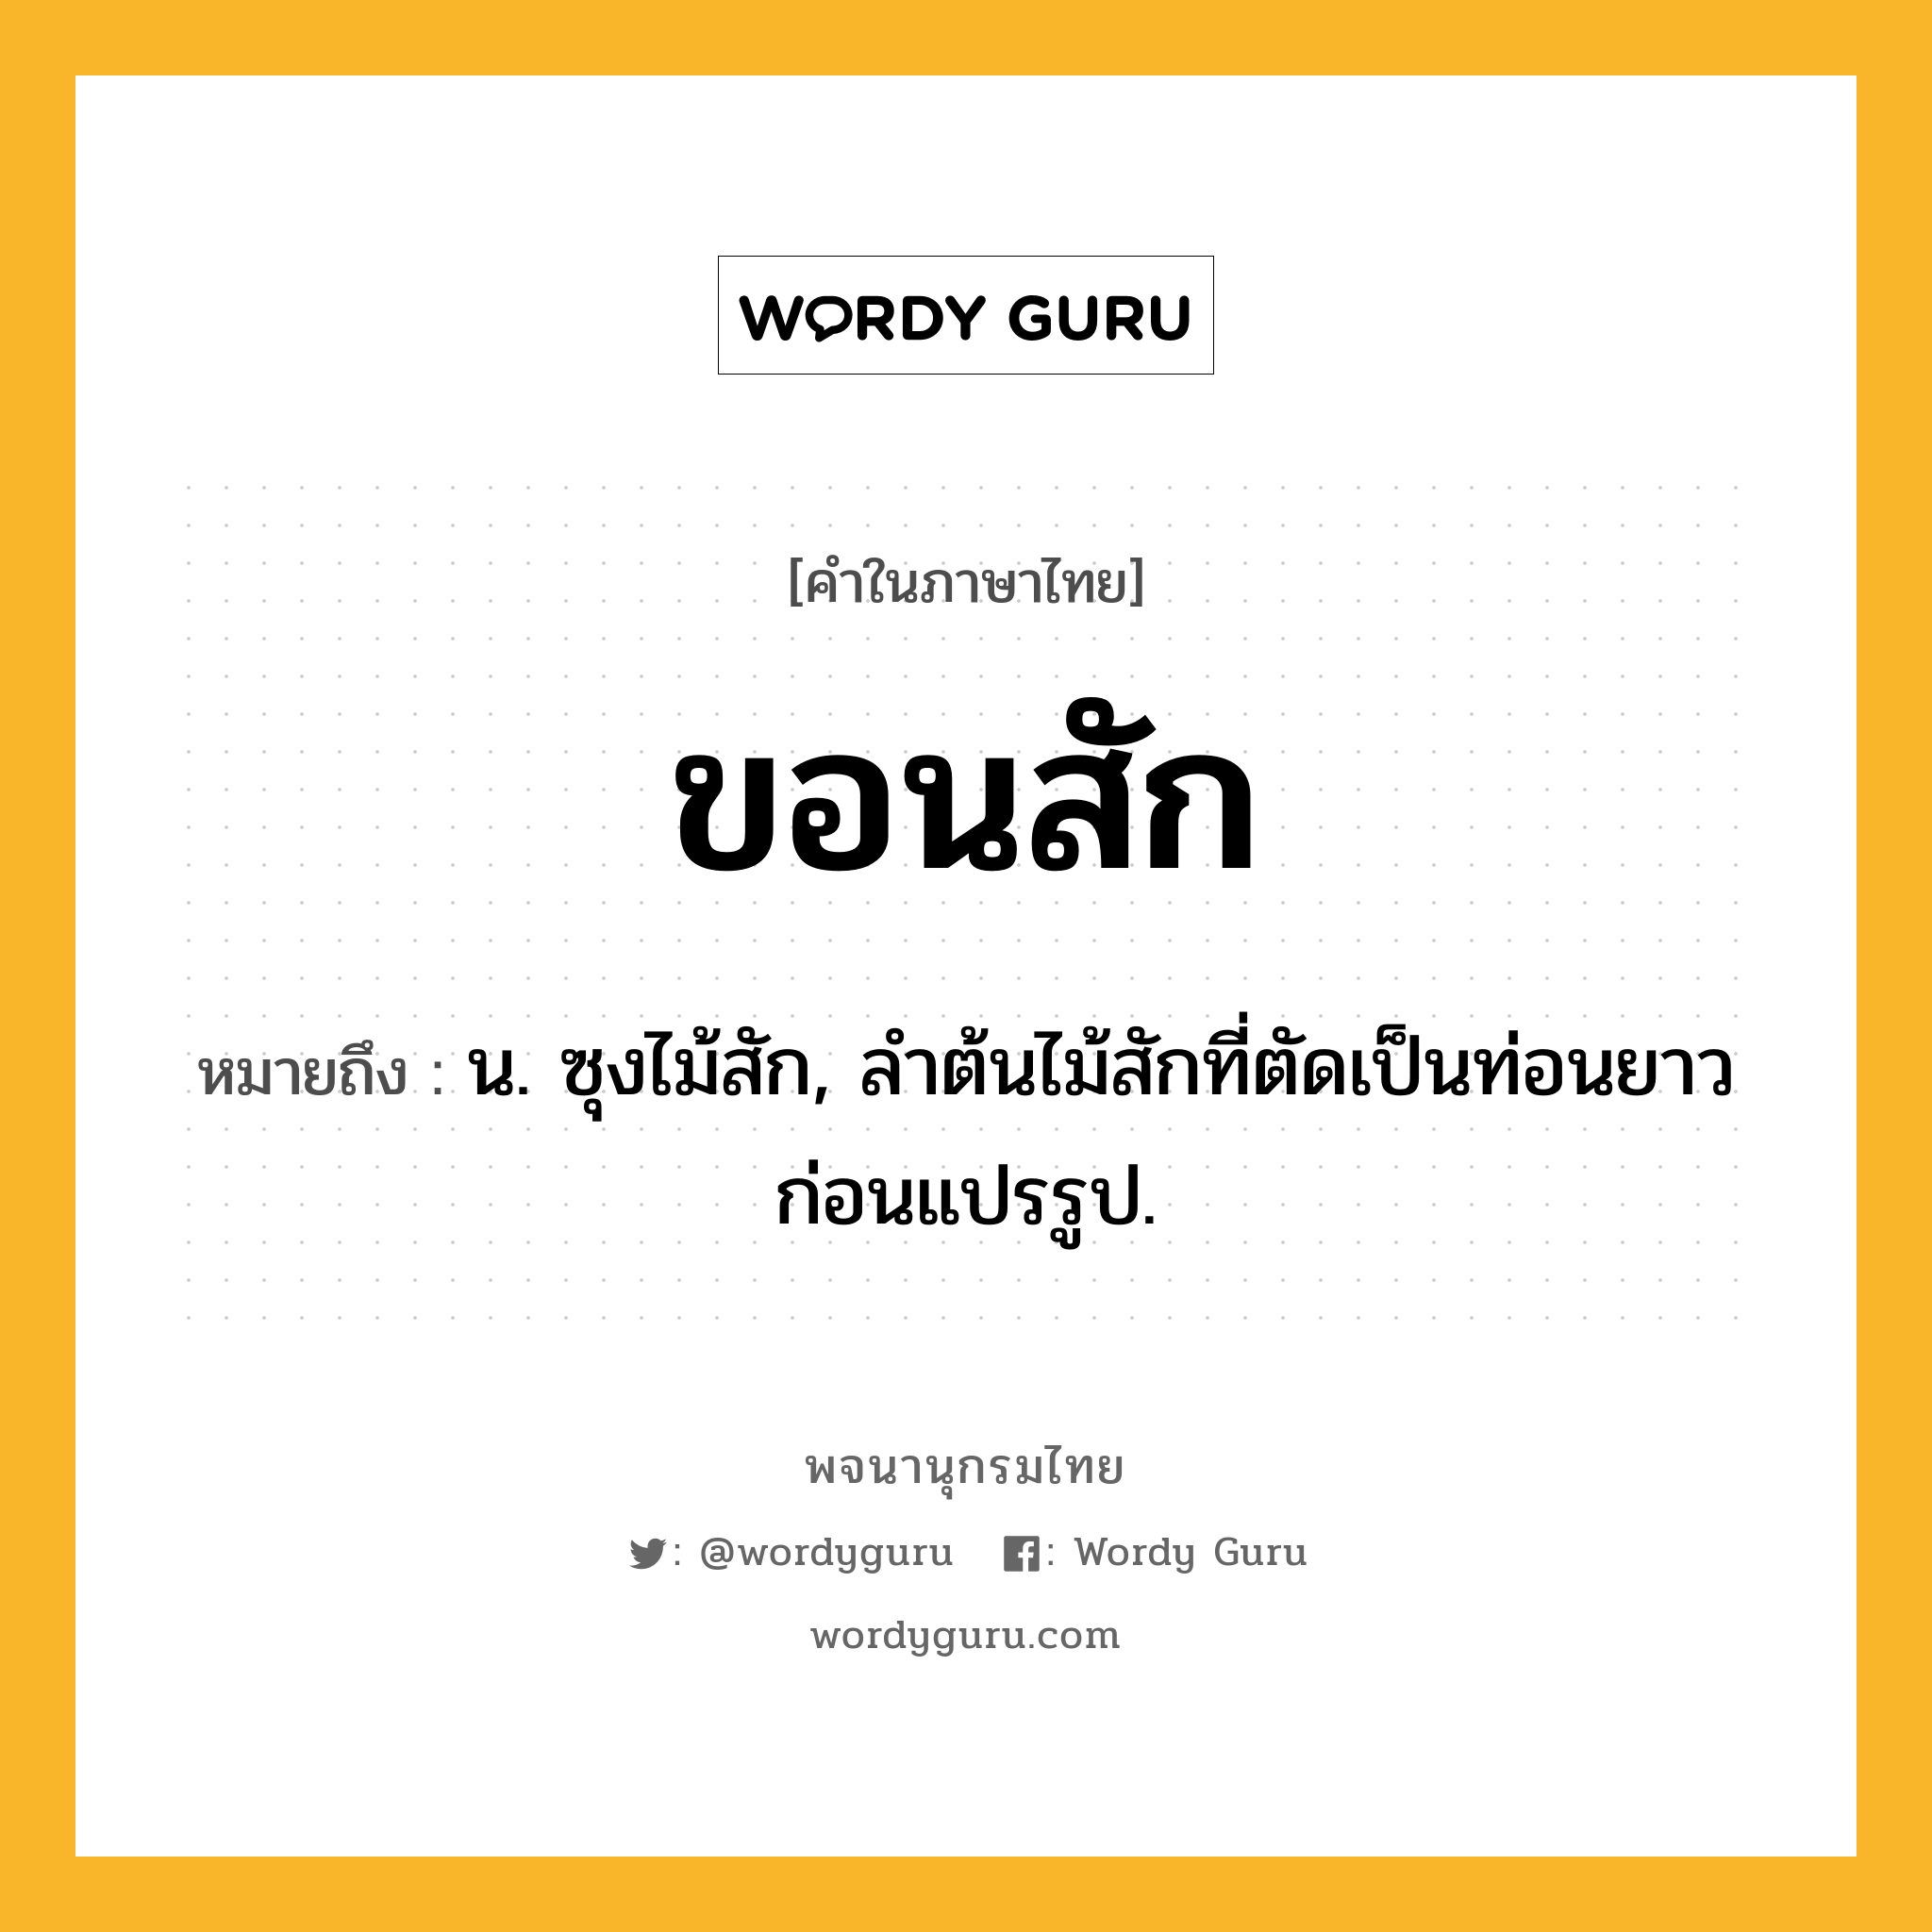 ขอนสัก หมายถึงอะไร?, คำในภาษาไทย ขอนสัก หมายถึง น. ซุงไม้สัก, ลำต้นไม้สักที่ตัดเป็นท่อนยาวก่อนแปรรูป.